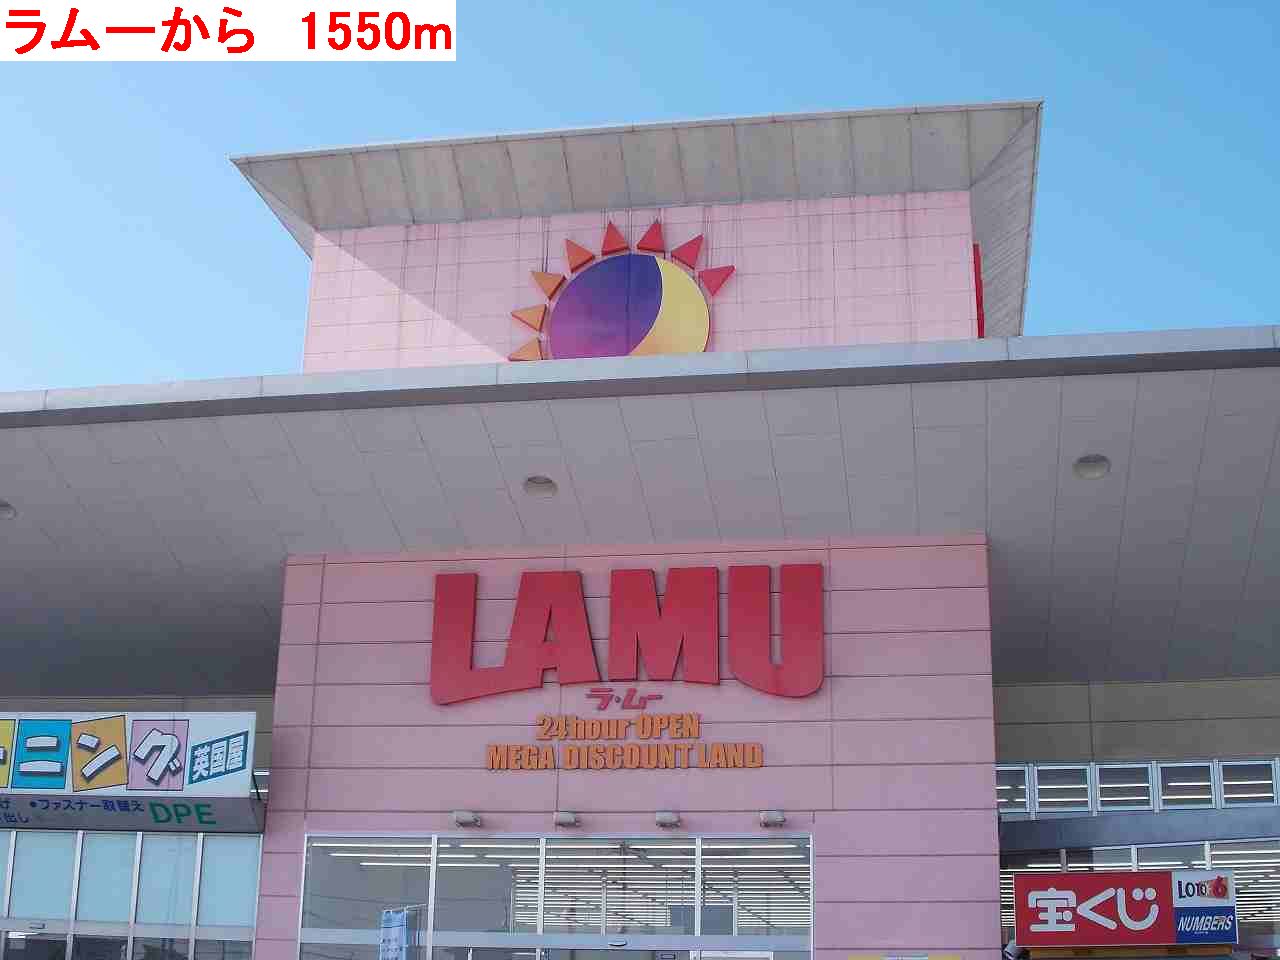 Supermarket. Lamu to (super) 1550m